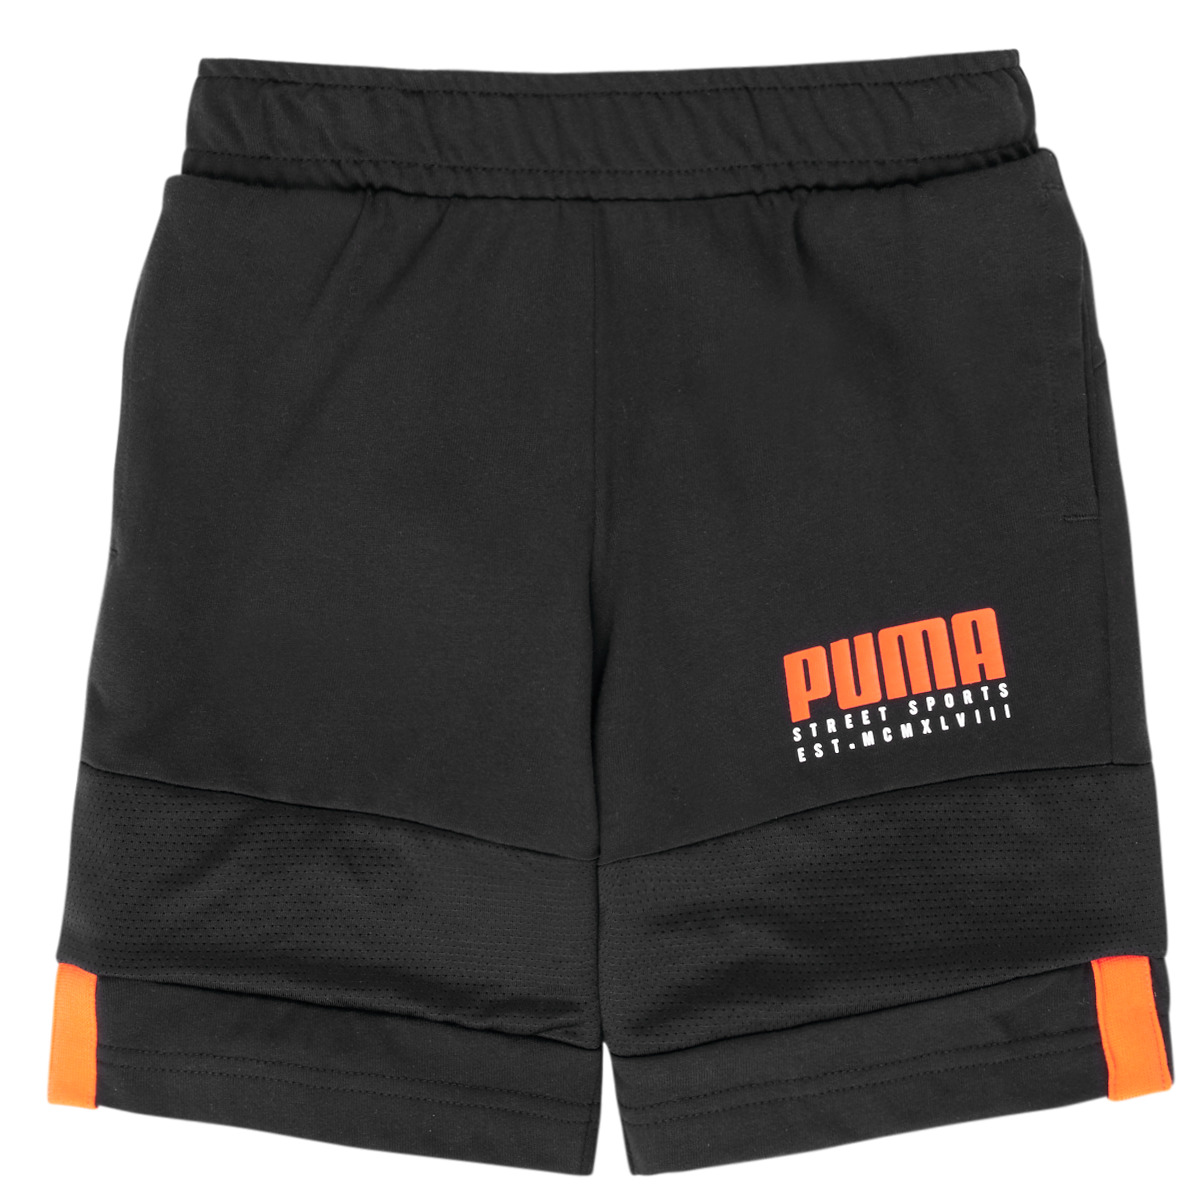 Kleidung Jungen Shorts / Bermudas Puma ALPHA JERSEY SHORT Schwarz